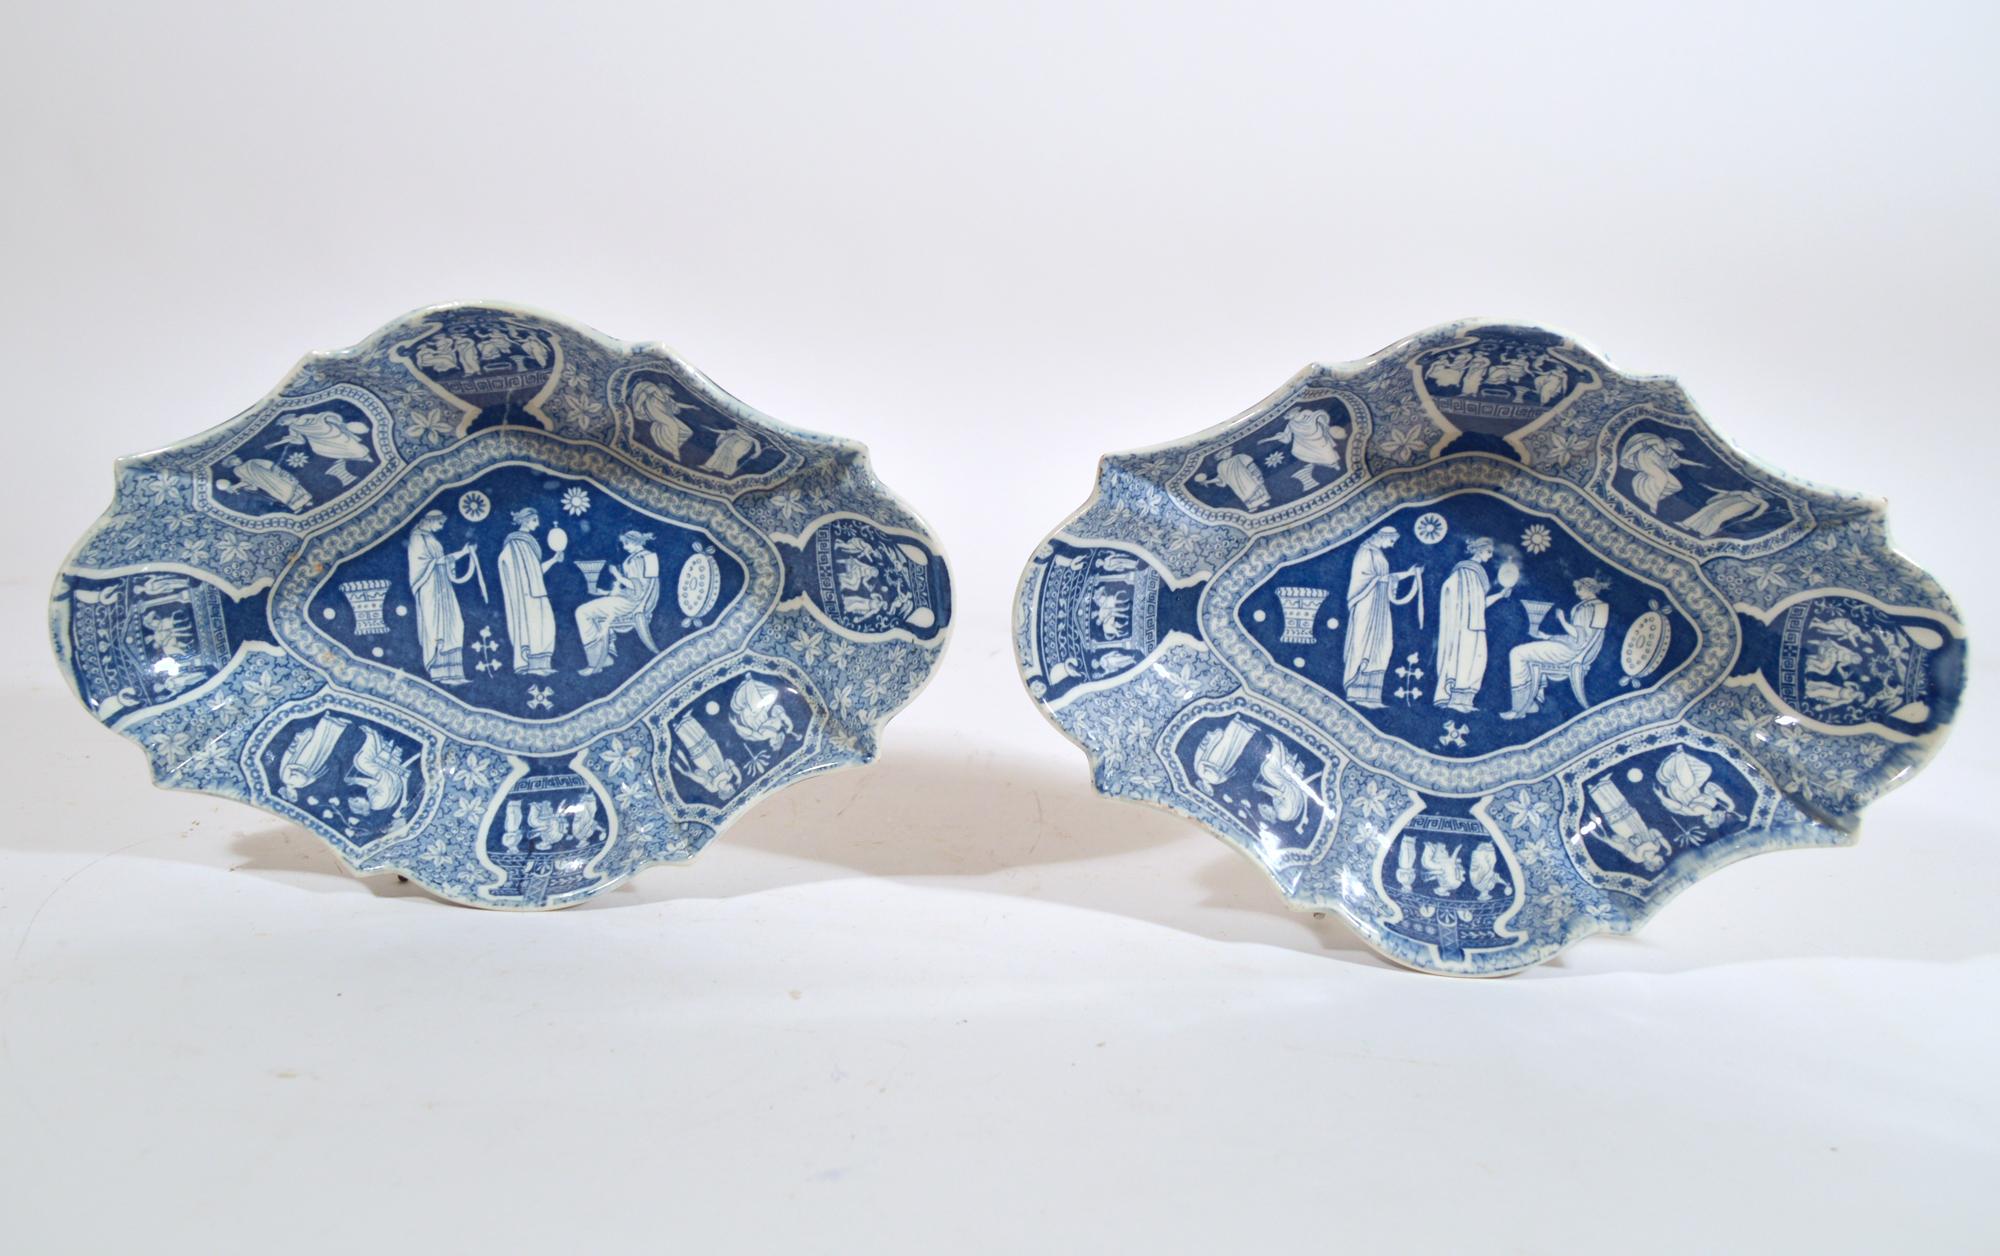 Plats à dessert ovales bleus à motif grec néo-classique Spode,
Une cérémonie domestique,
Début du 19e siècle

Les plats en poterie Spode à motif grec sont imprimés en bleu avec 